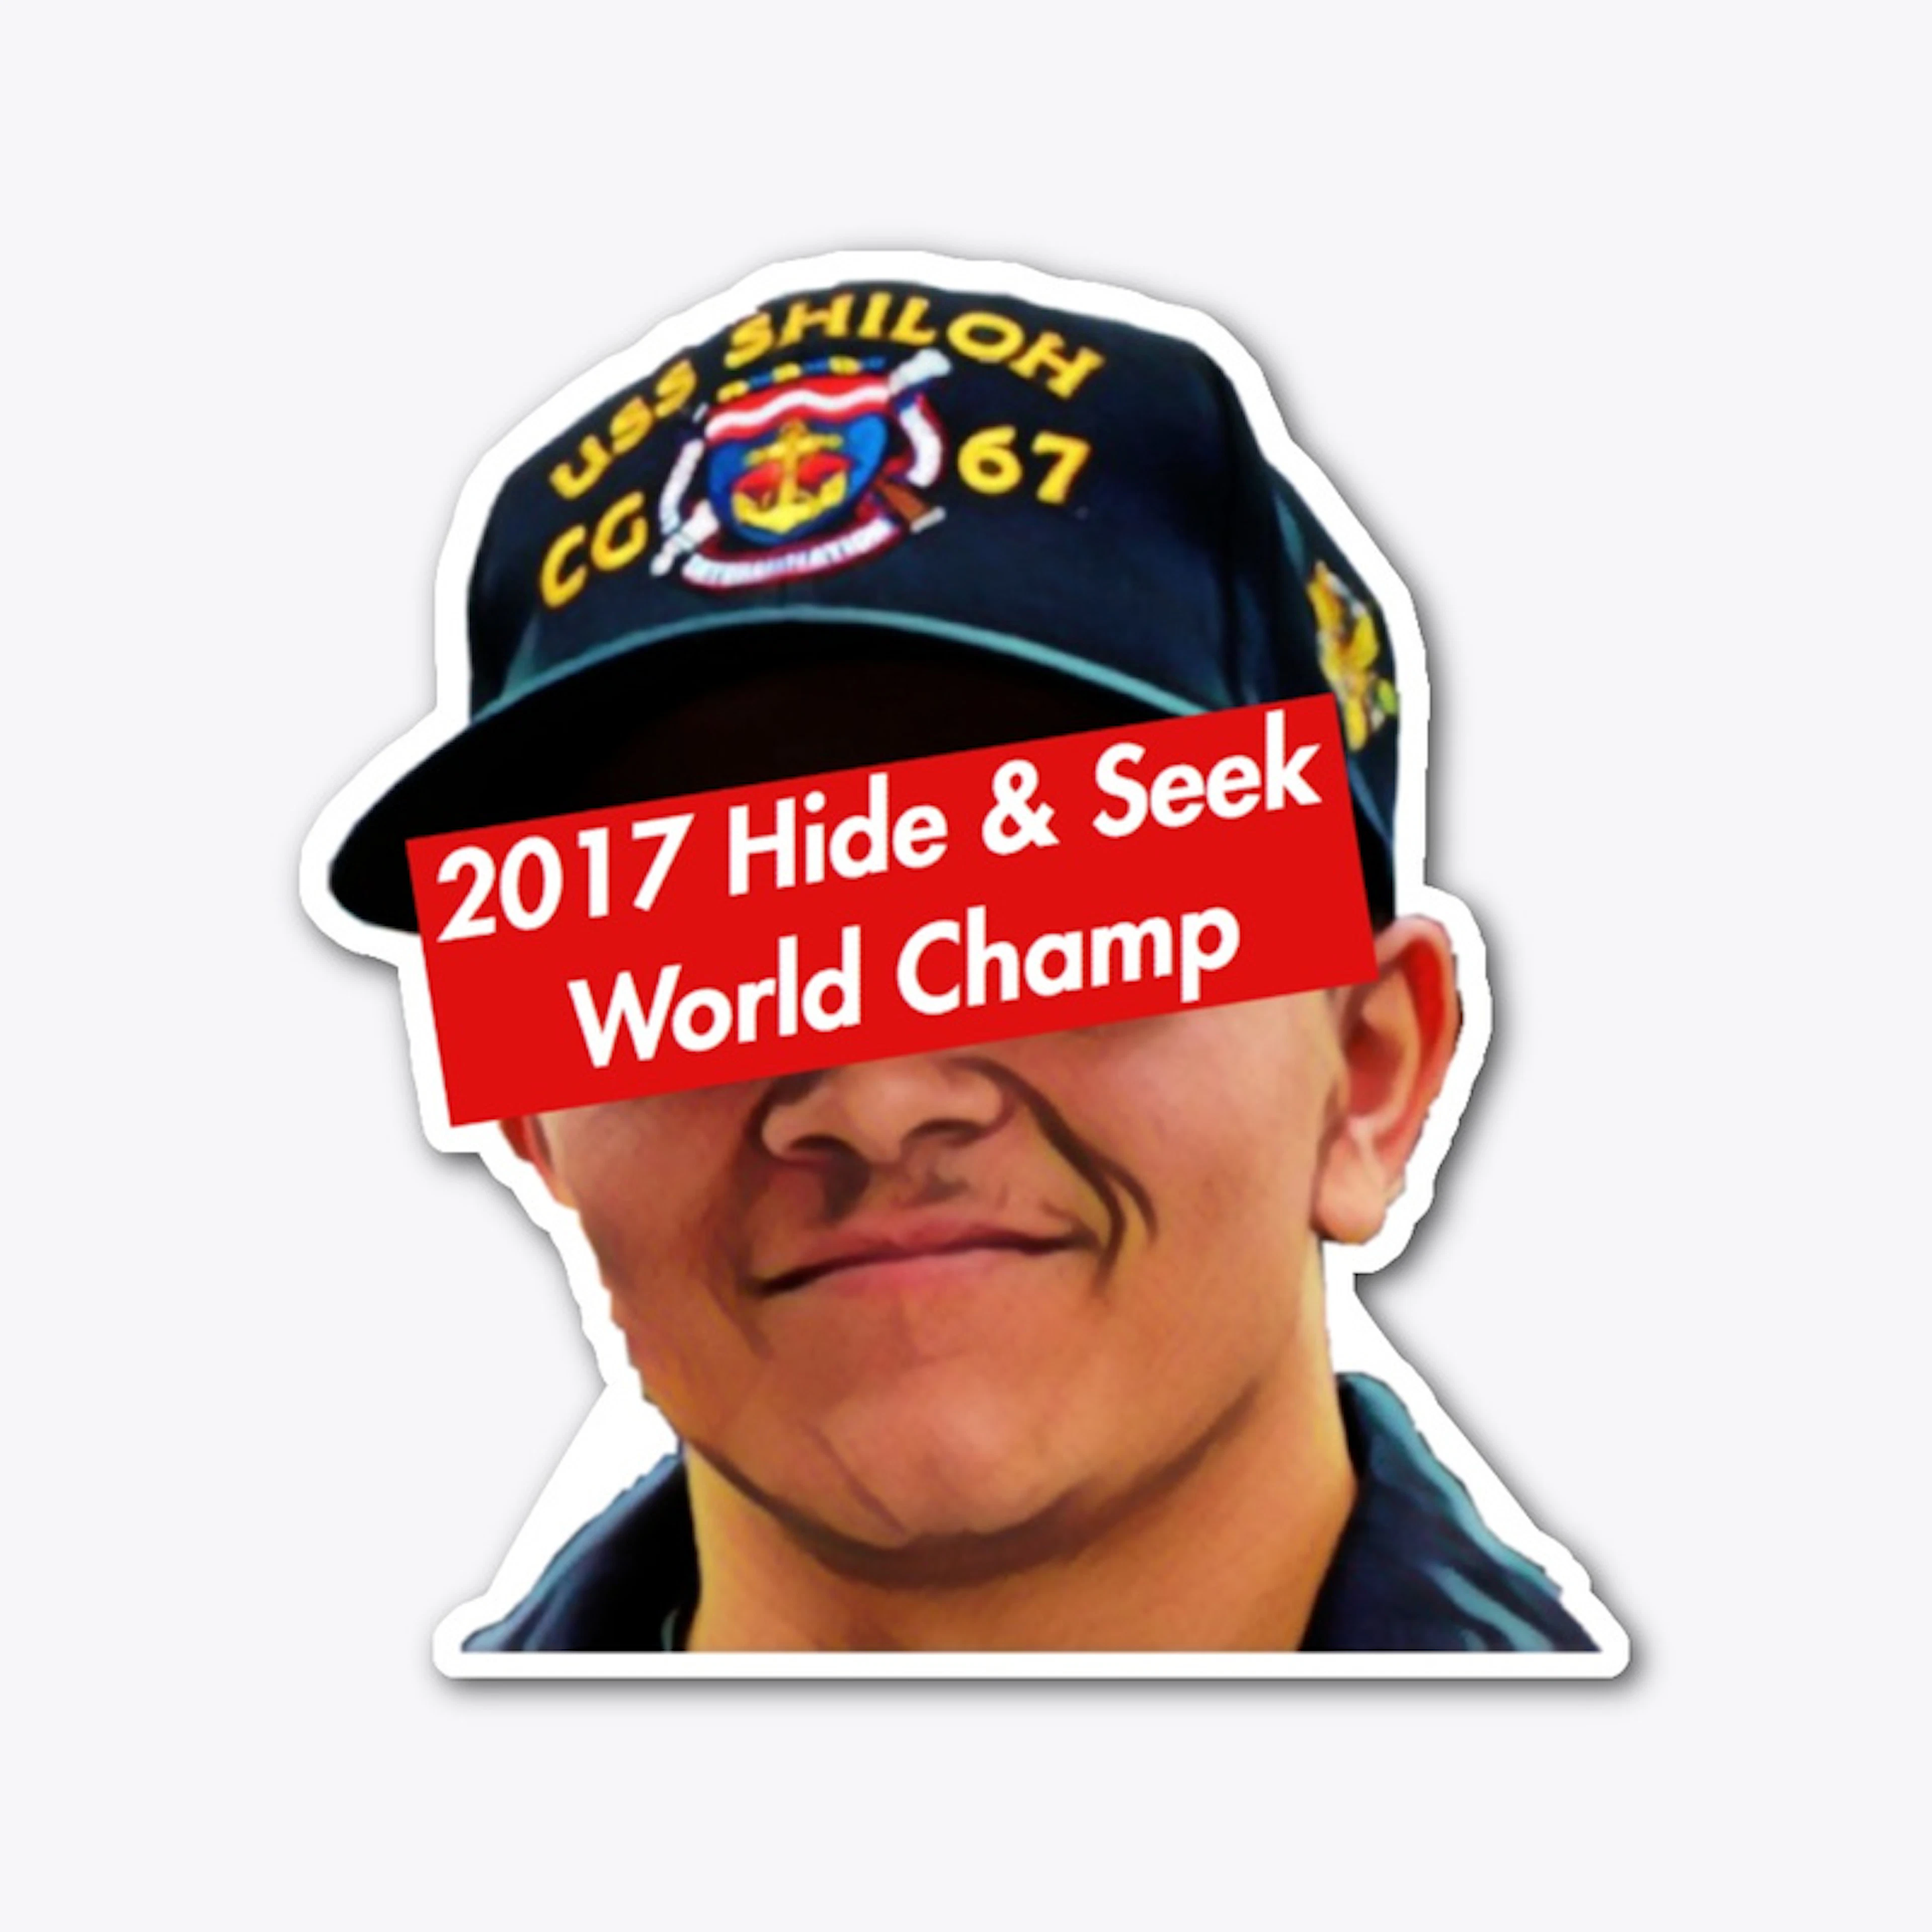 2017 Hide and Seek World Champ